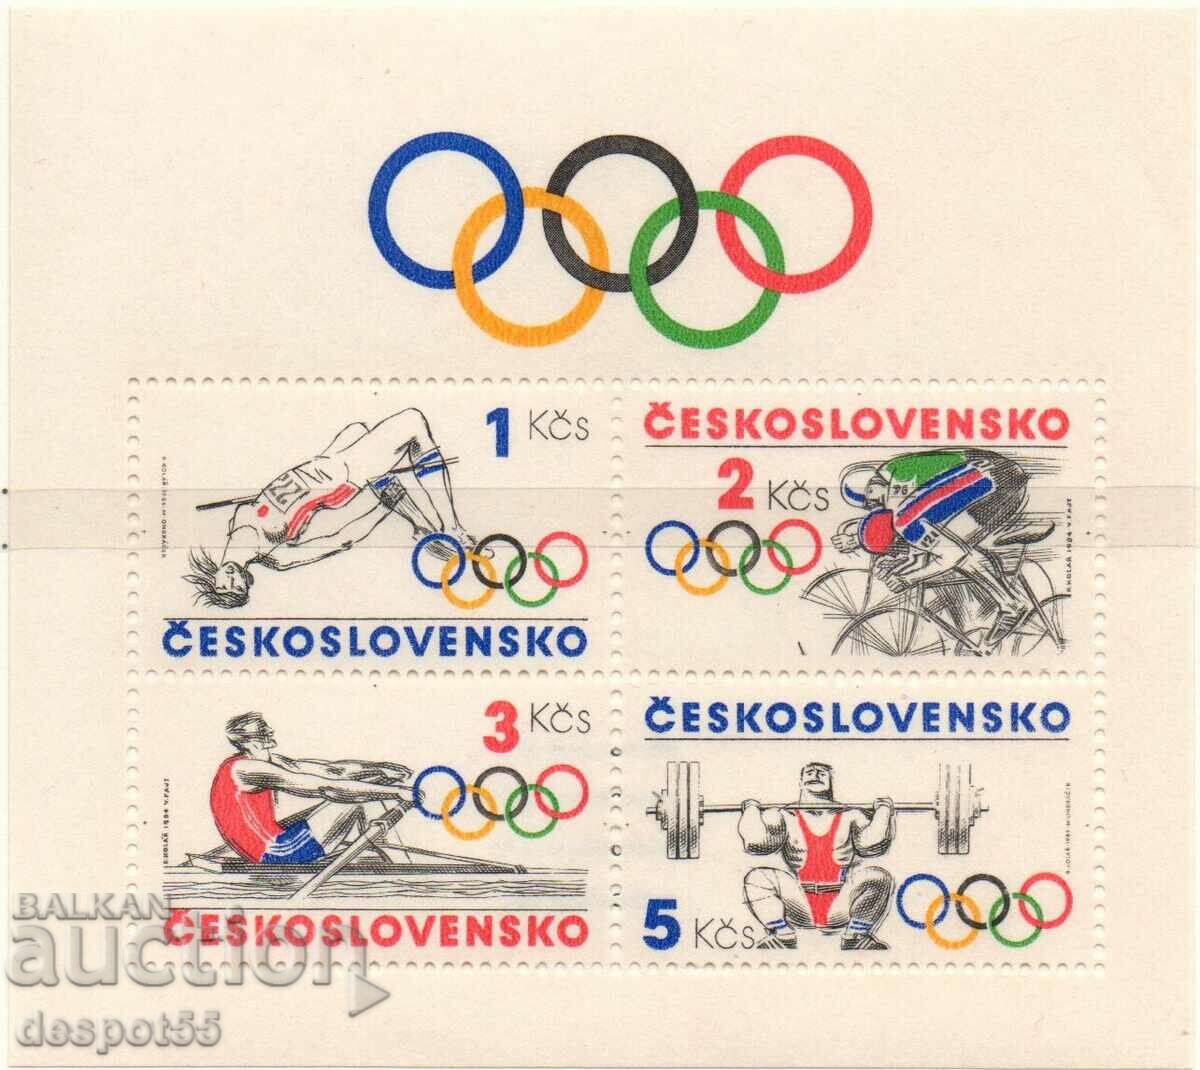 1984. Τσεχοσλοβακία. Ολυμπιακοί Αγώνες, Λος Άντζελες. ΟΙΚΟΔΟΜΙΚΟ ΤΕΤΡΑΓΩΝΟ.